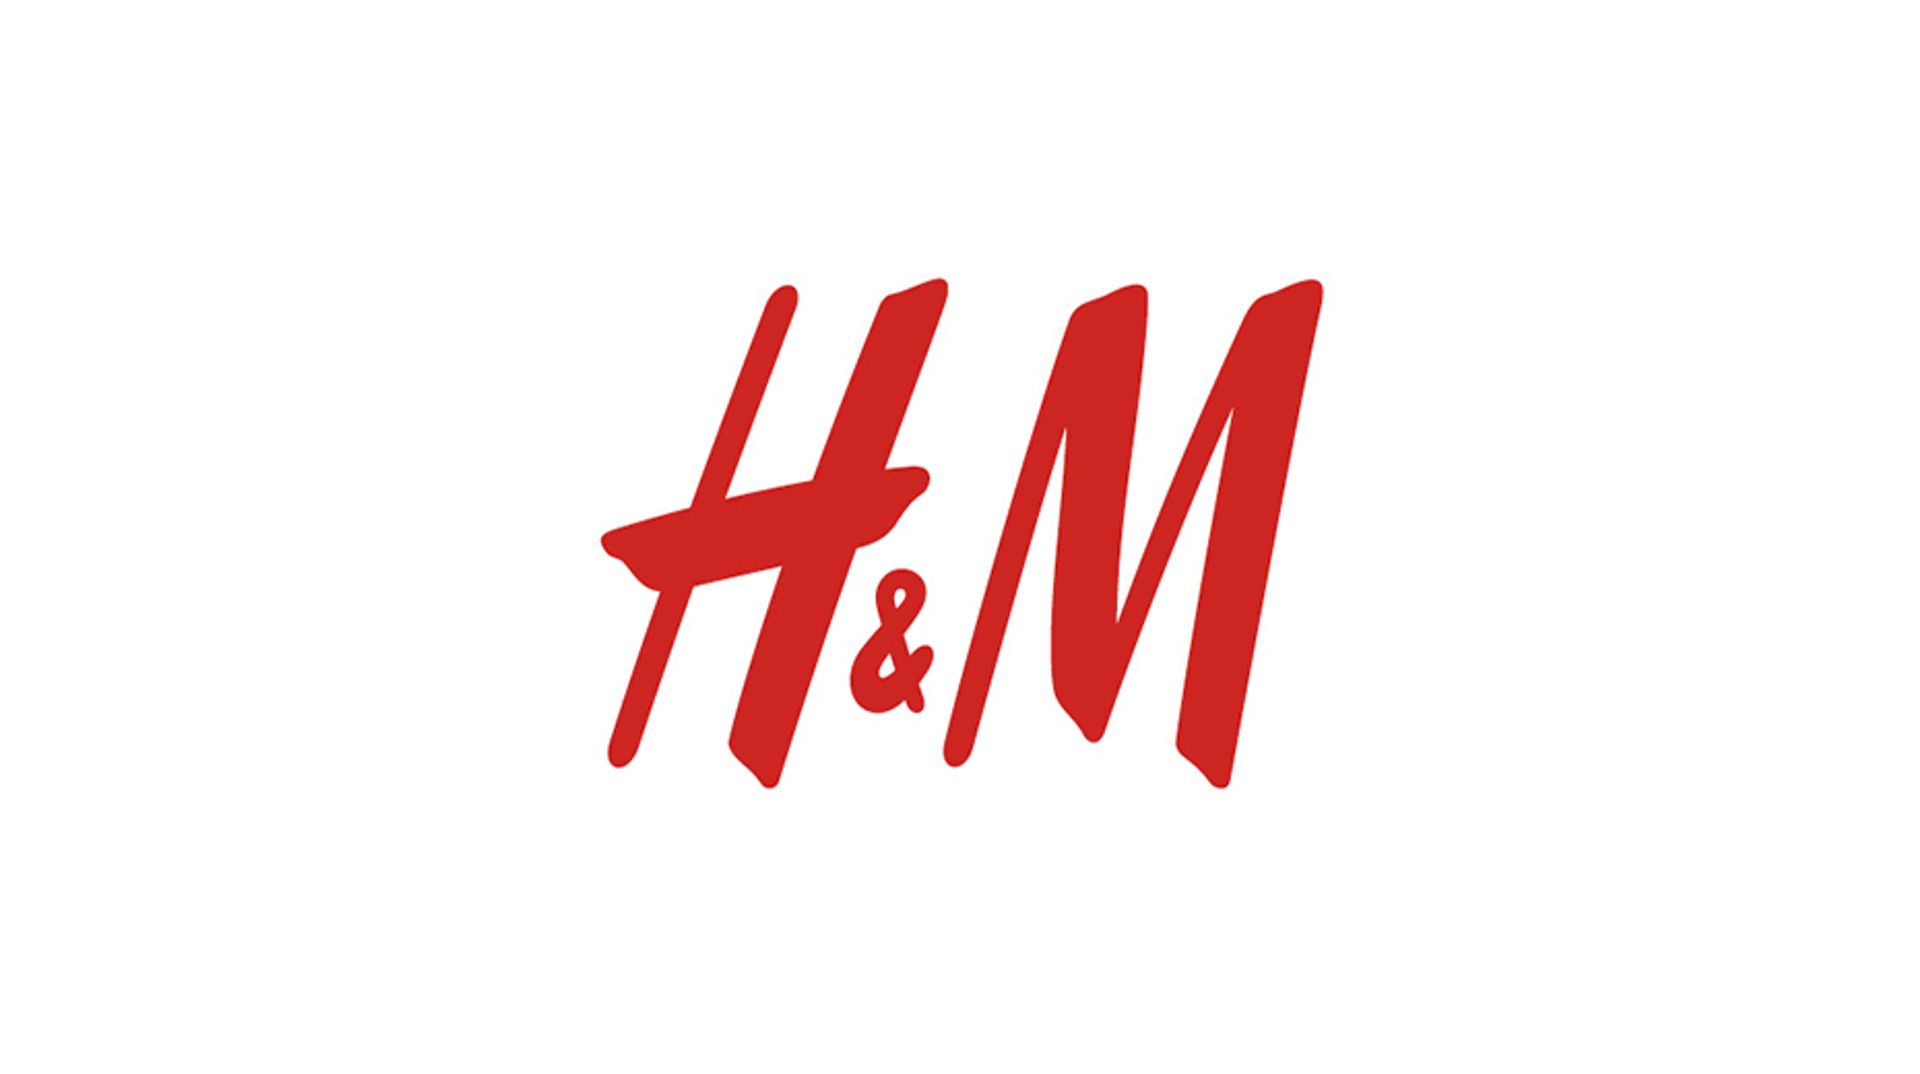 klachten over winkelketen H&M - Kassa -